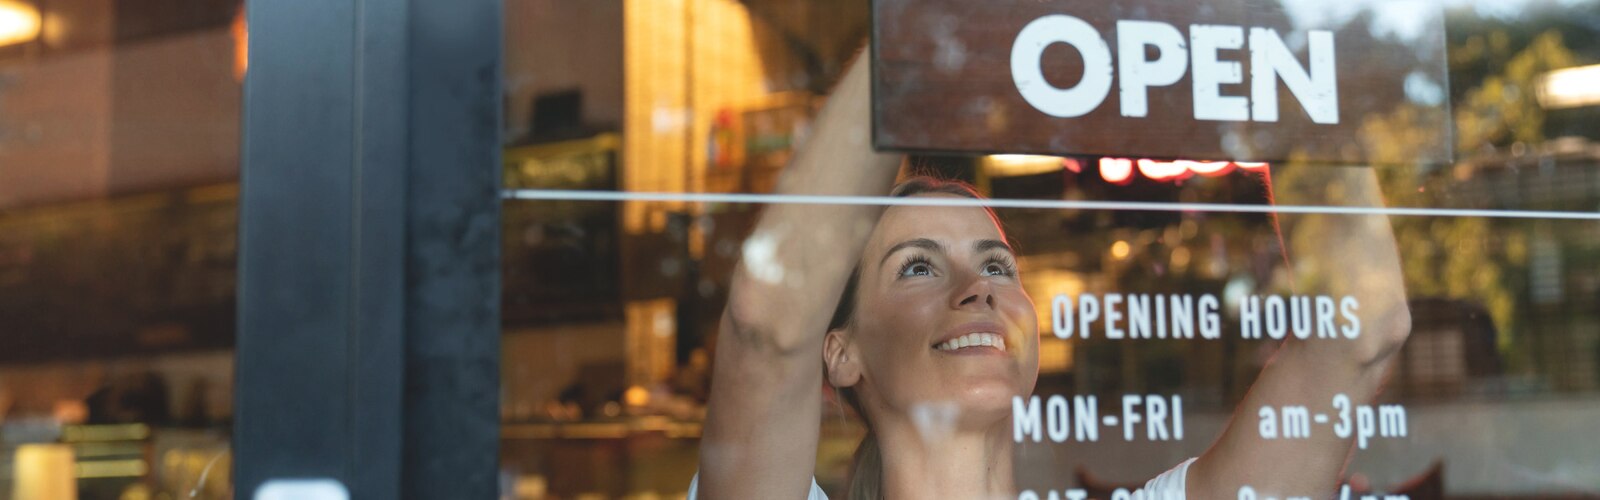 Femmes regardant légèrement vers le haut à travers la vitre d’un restaurant ; sur les fenêtres, une partie des heures d’ouverture est visible